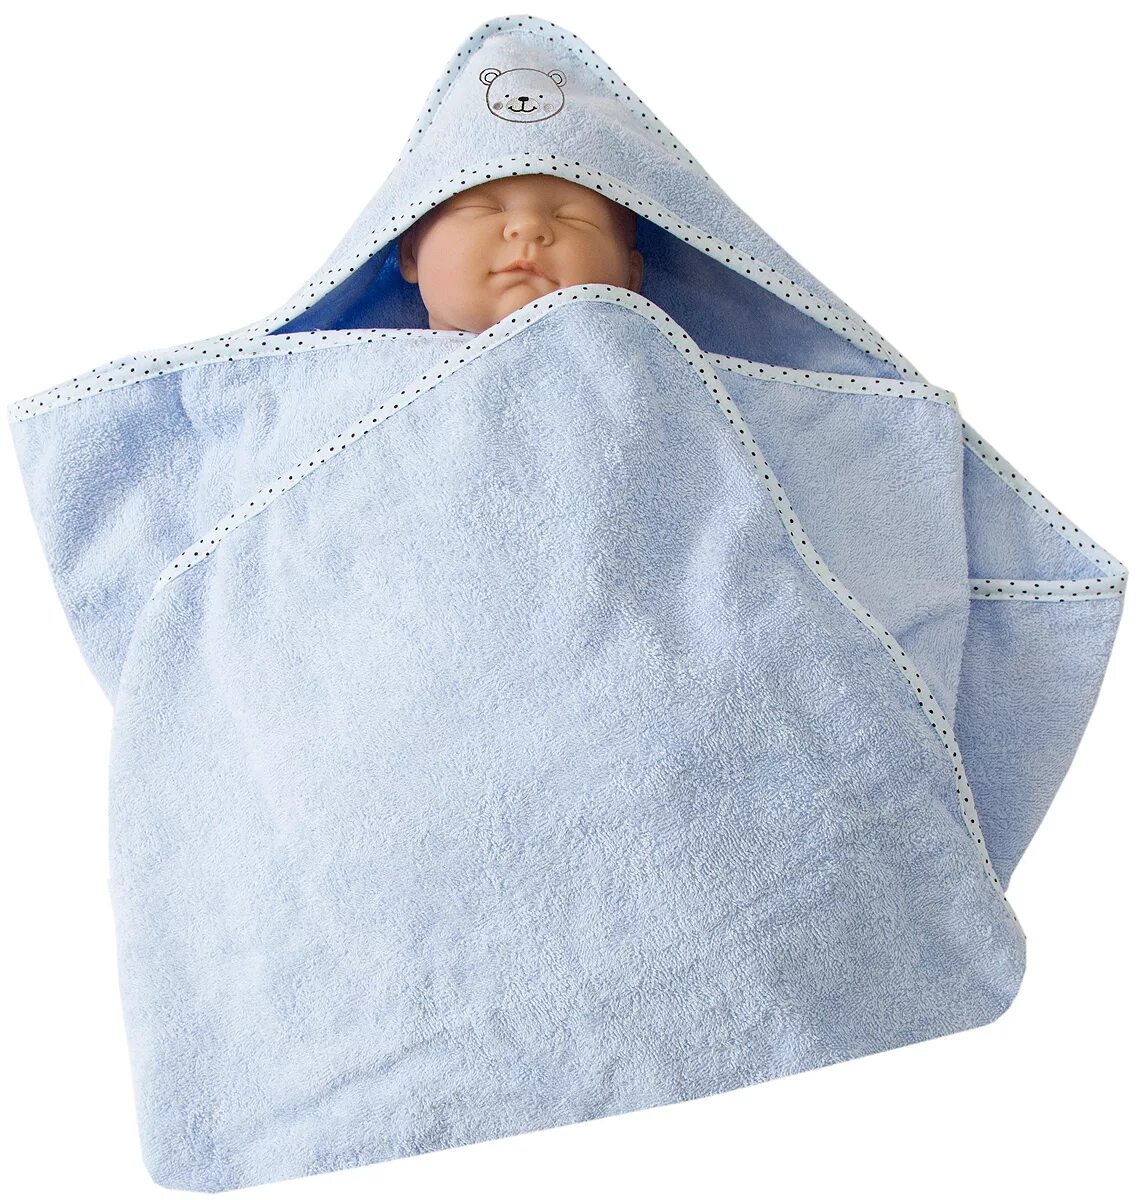 Полотенце новорожденным купить. Полотенце-уголок махра 120*75см голубой м7. Полотенце уголок для новорожденных. Полотенце с углом для новорожденных. Уголок полотенце для новорожденного.